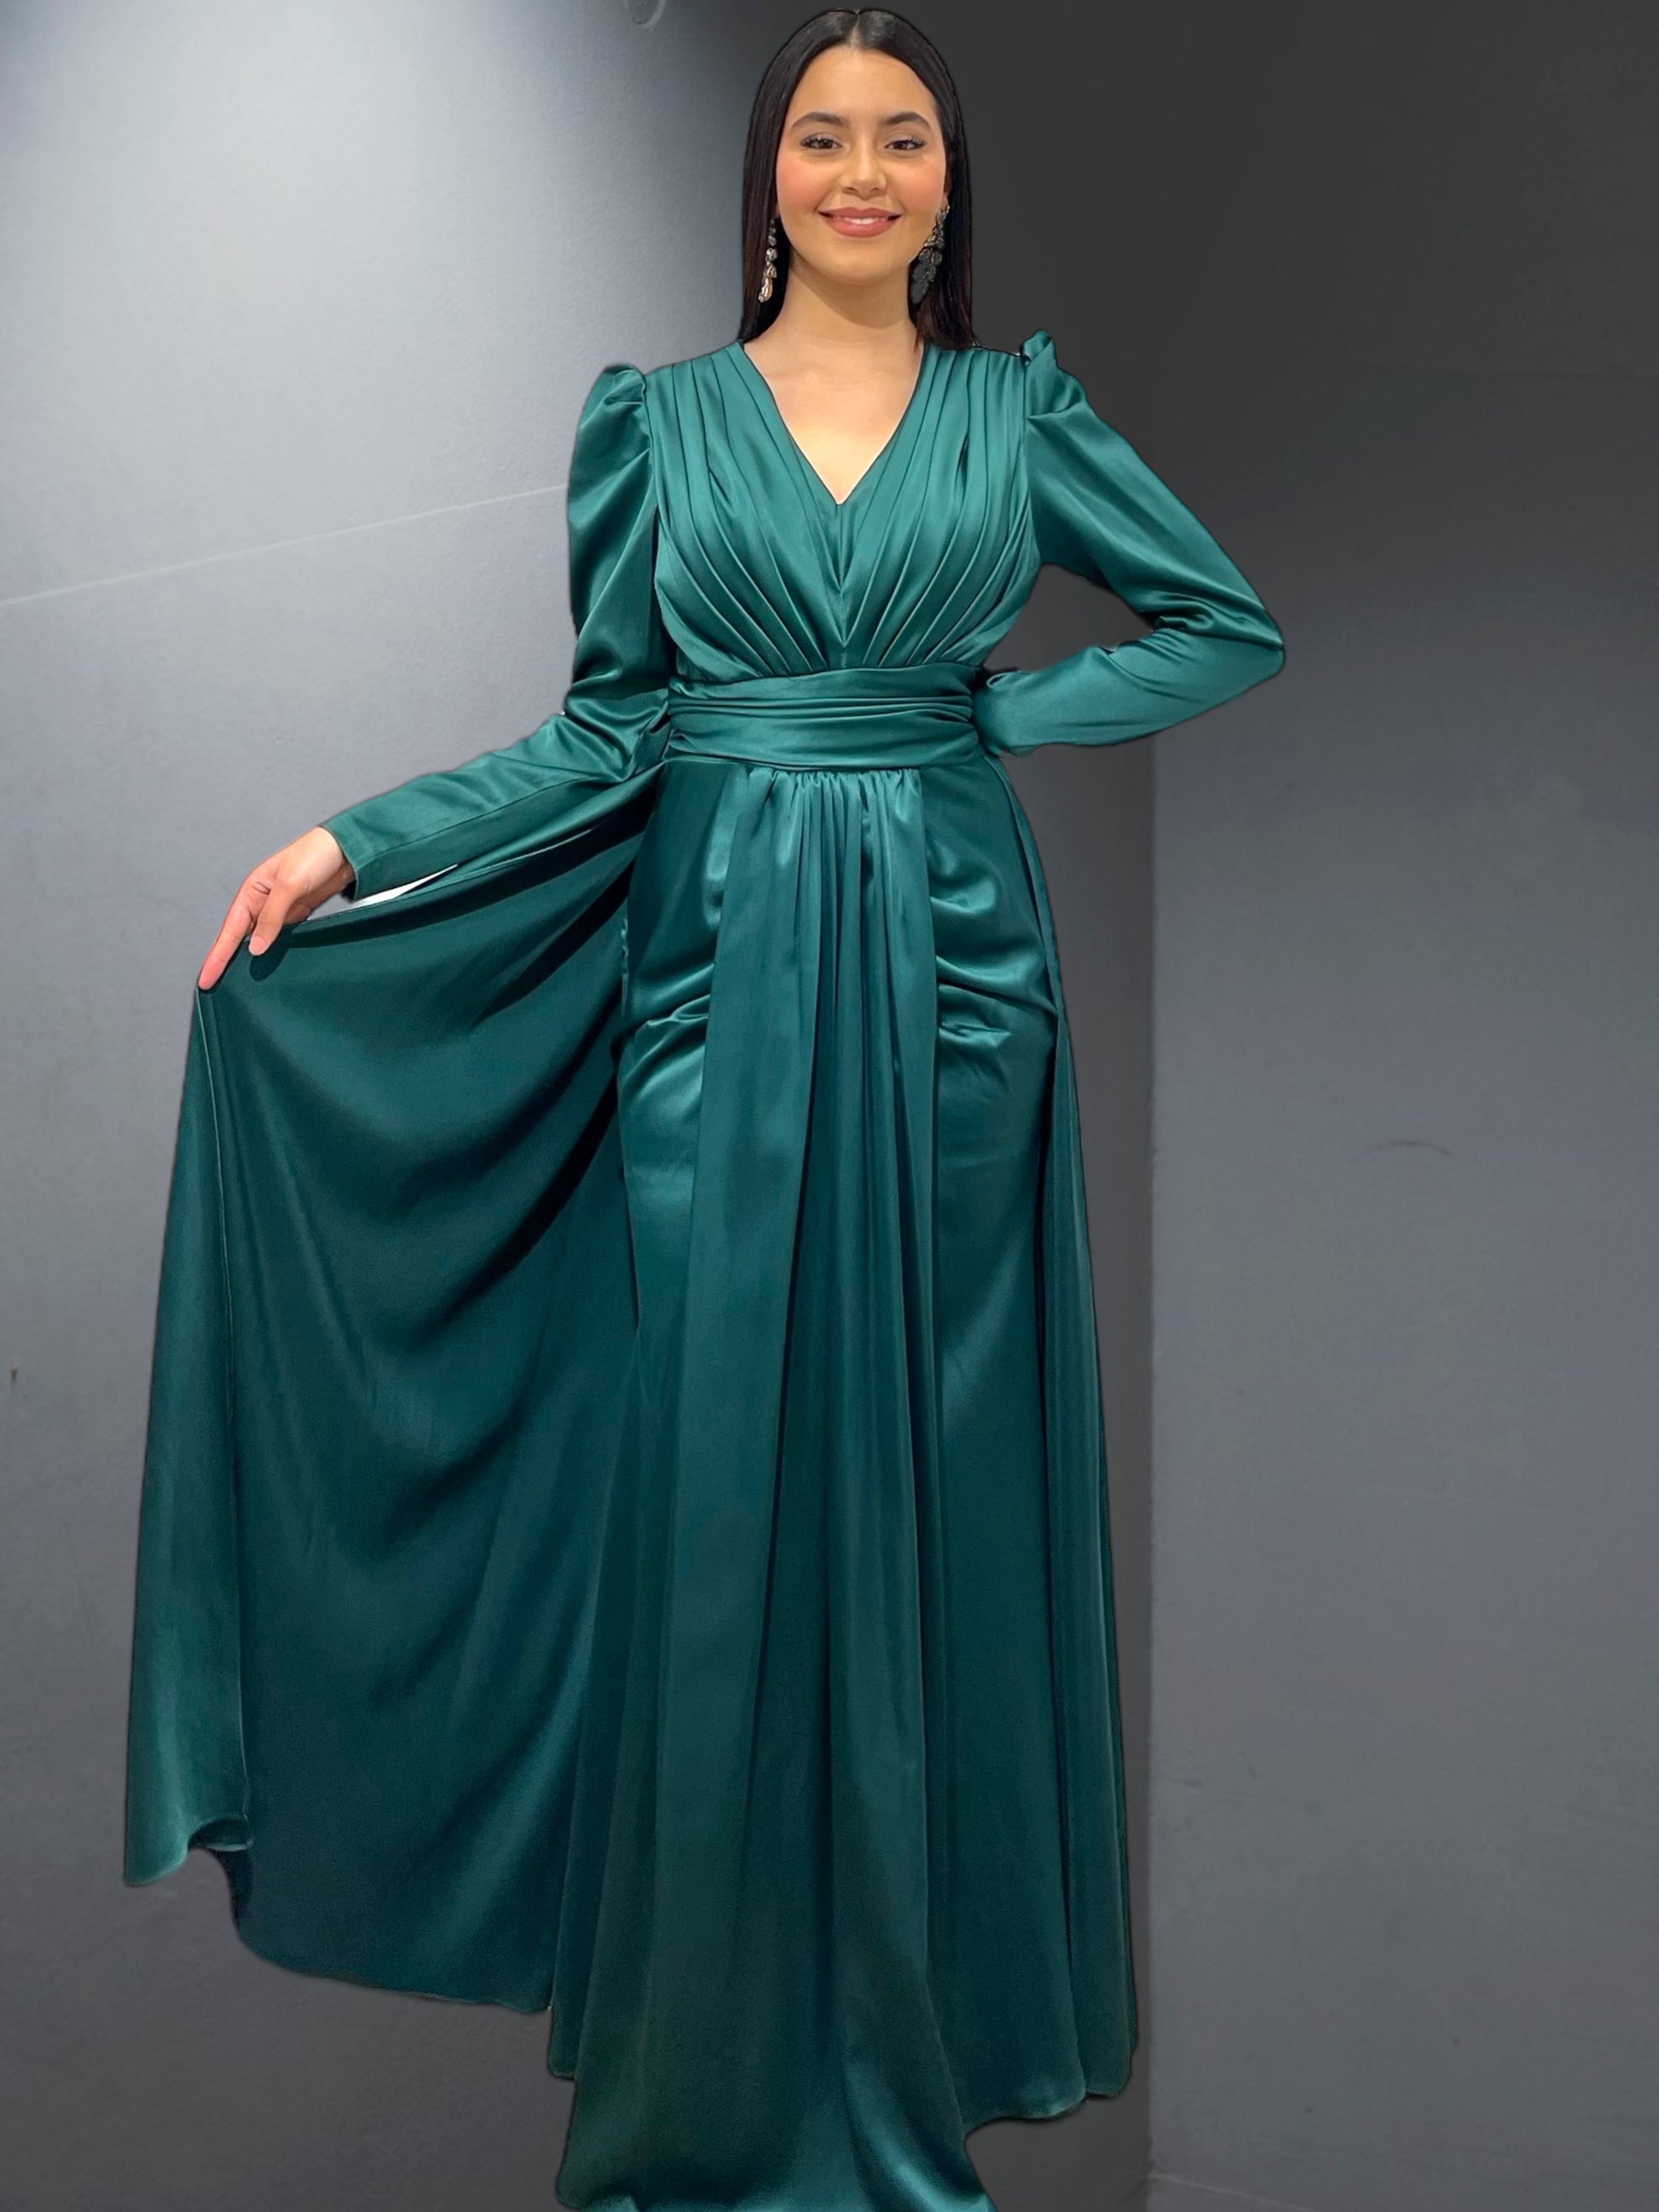 La robe de soirée "Arles" est une création raffinée et élégante - AmirCouture 